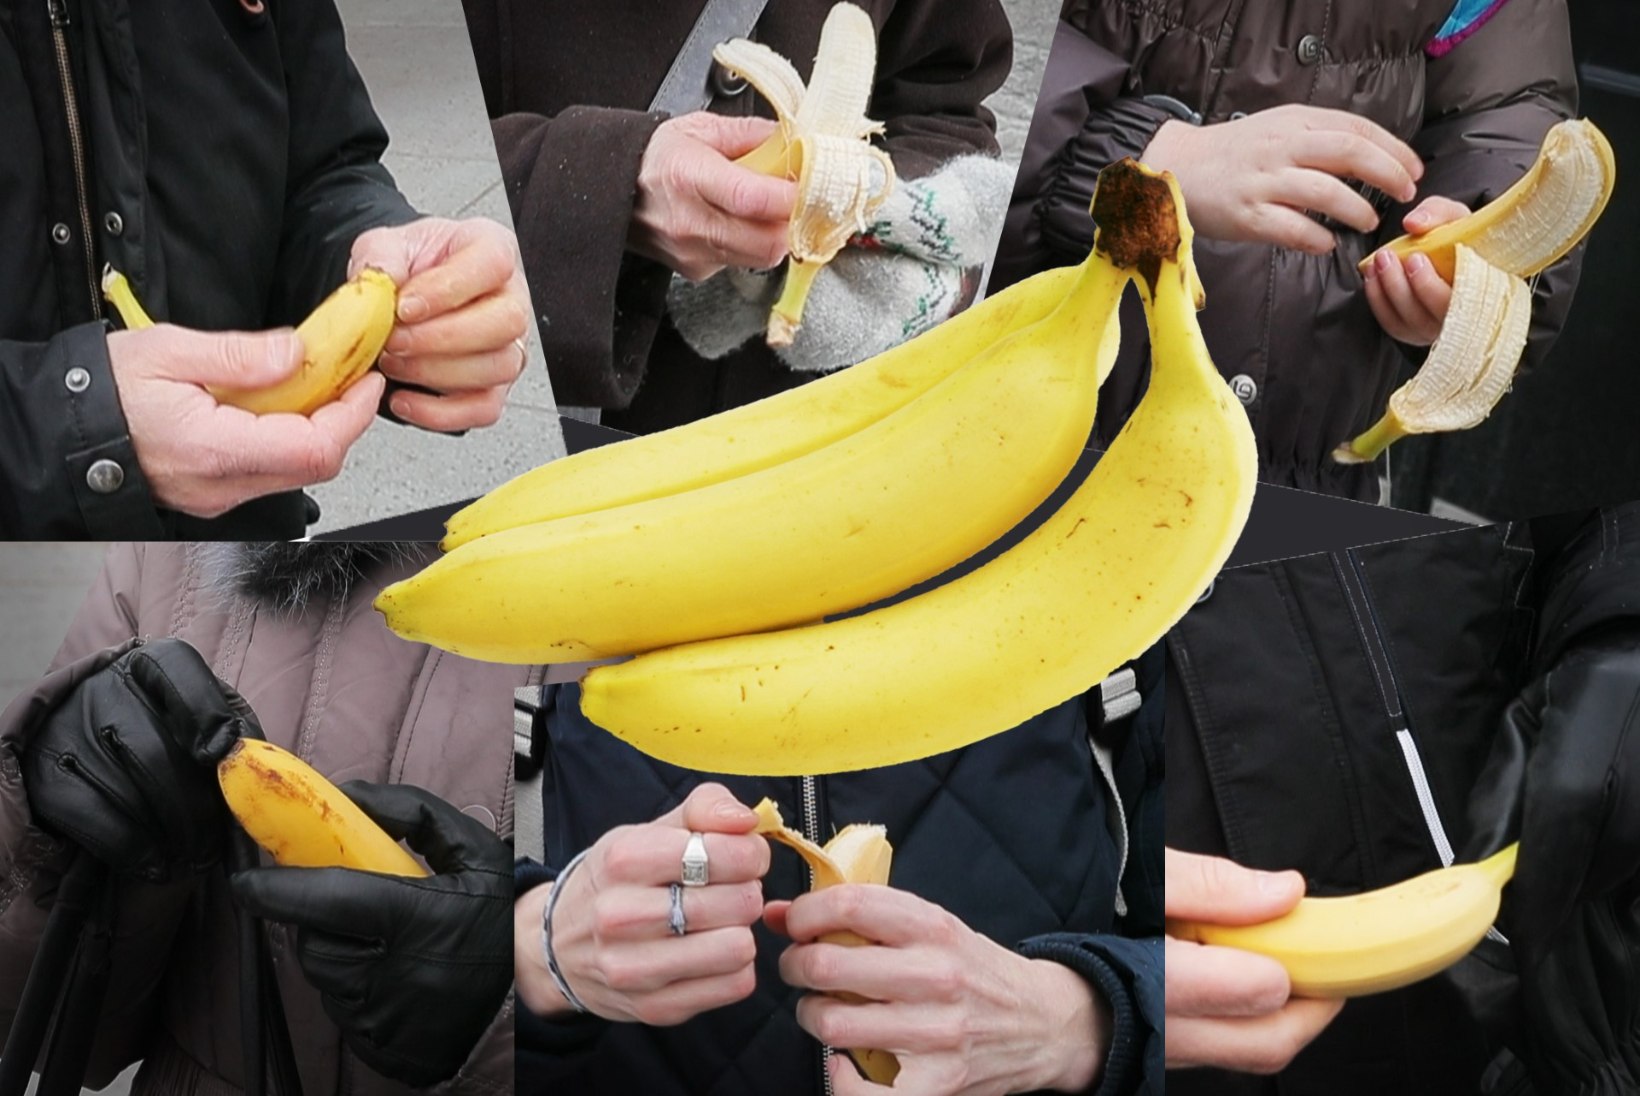 SUUR ANALÜÜS: kuidas avada banaane ja teisi keerulisi vilju?